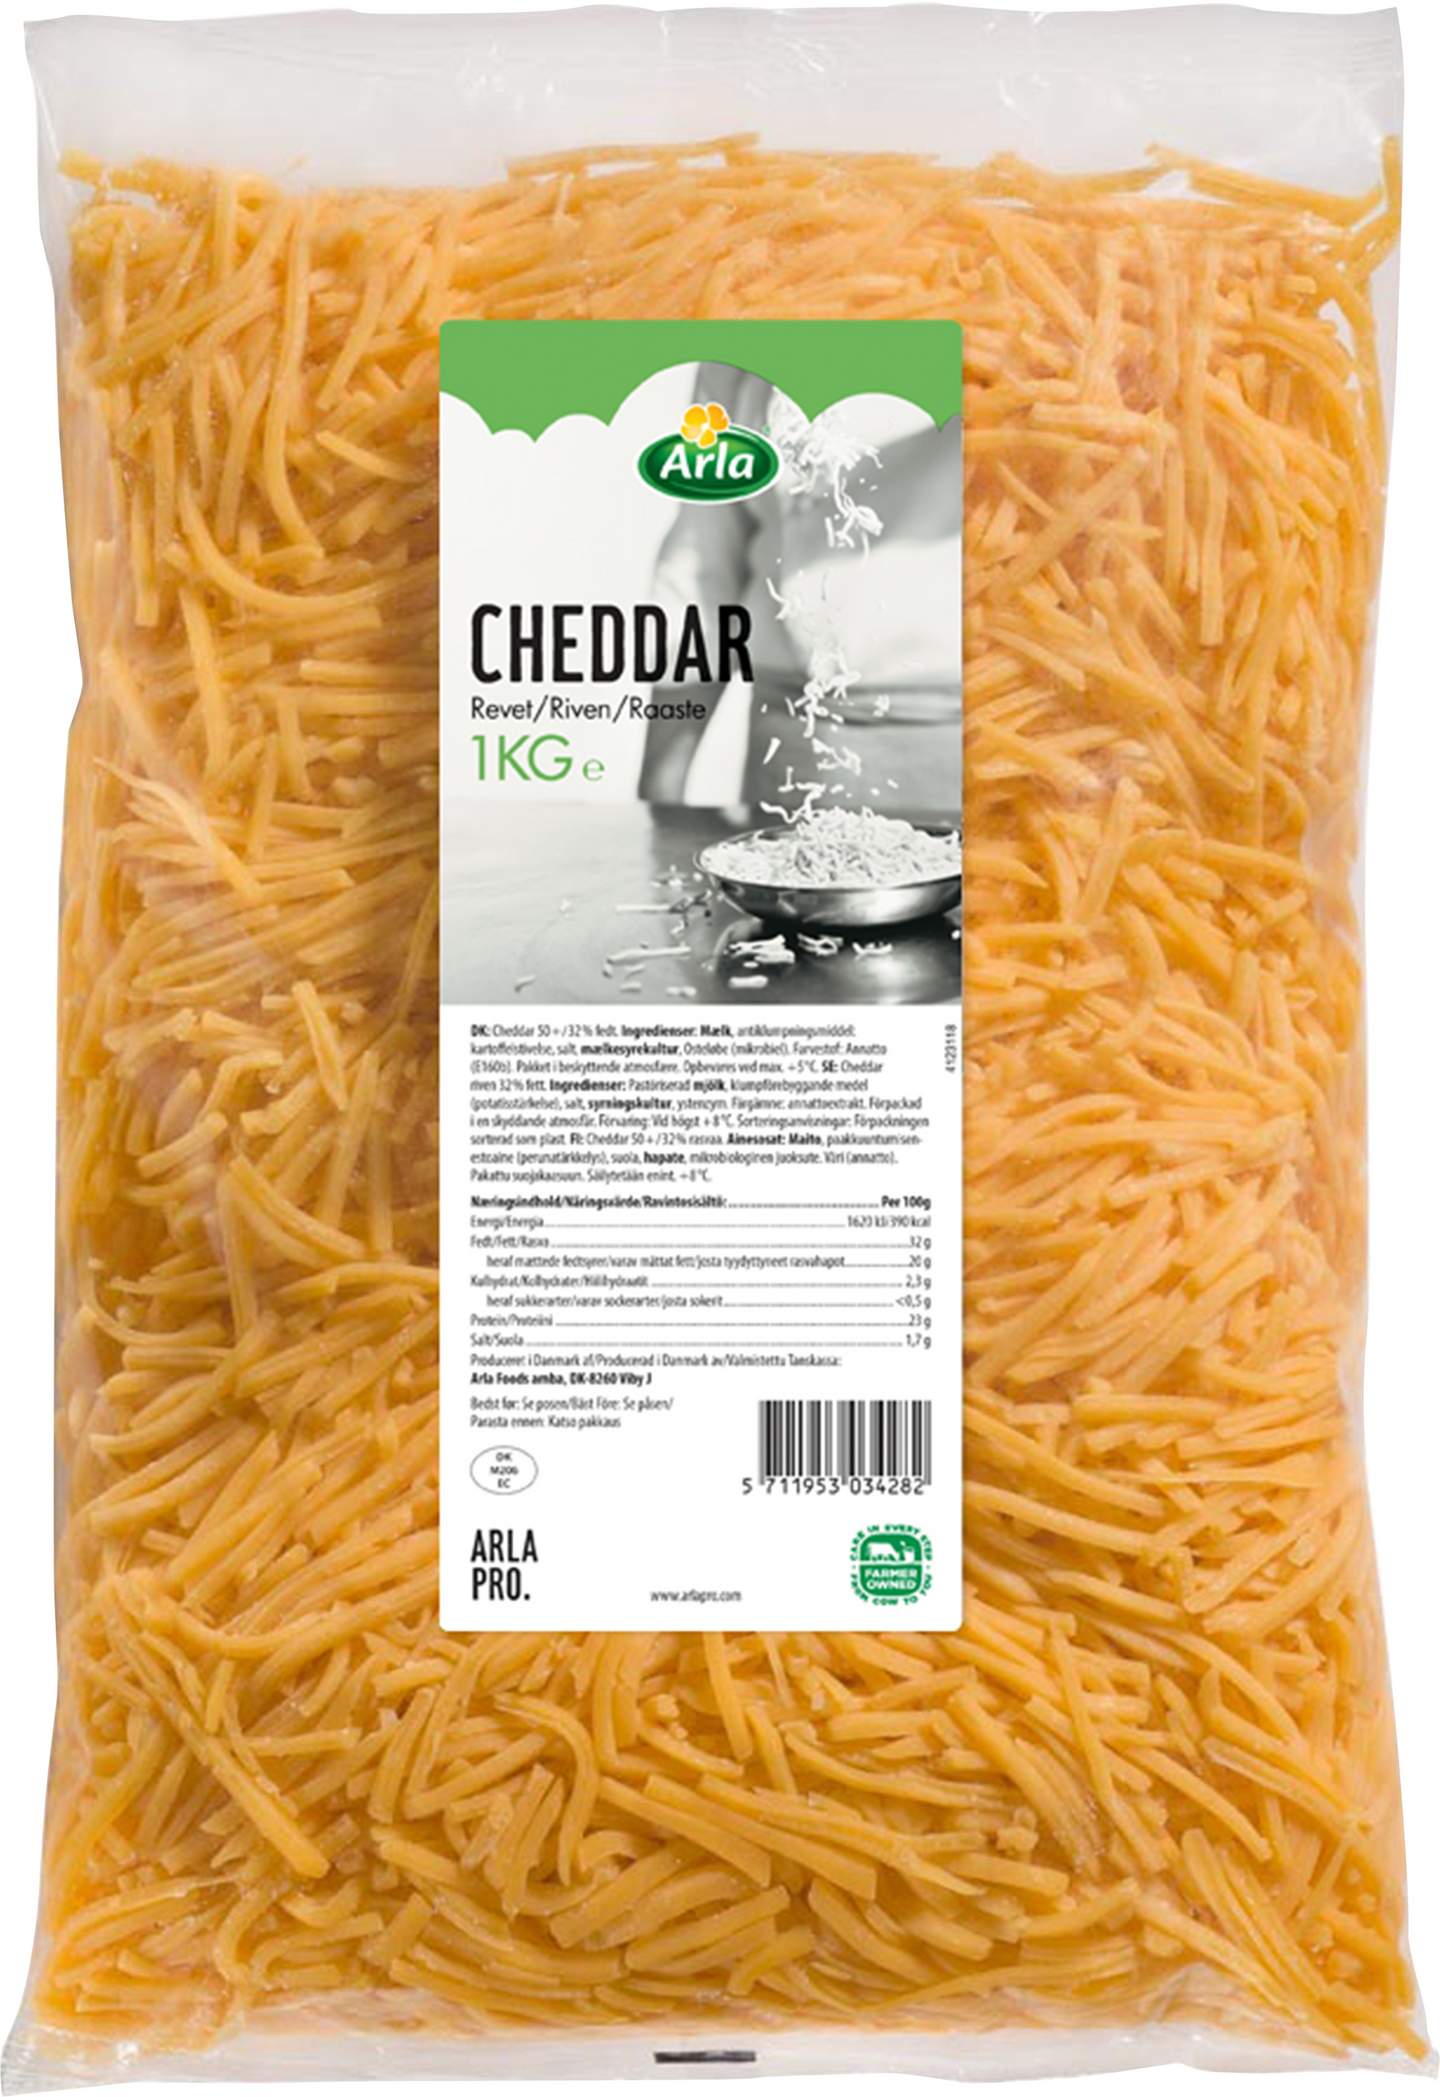 Arla Cheddar juustoraaste 1kg laktoositon